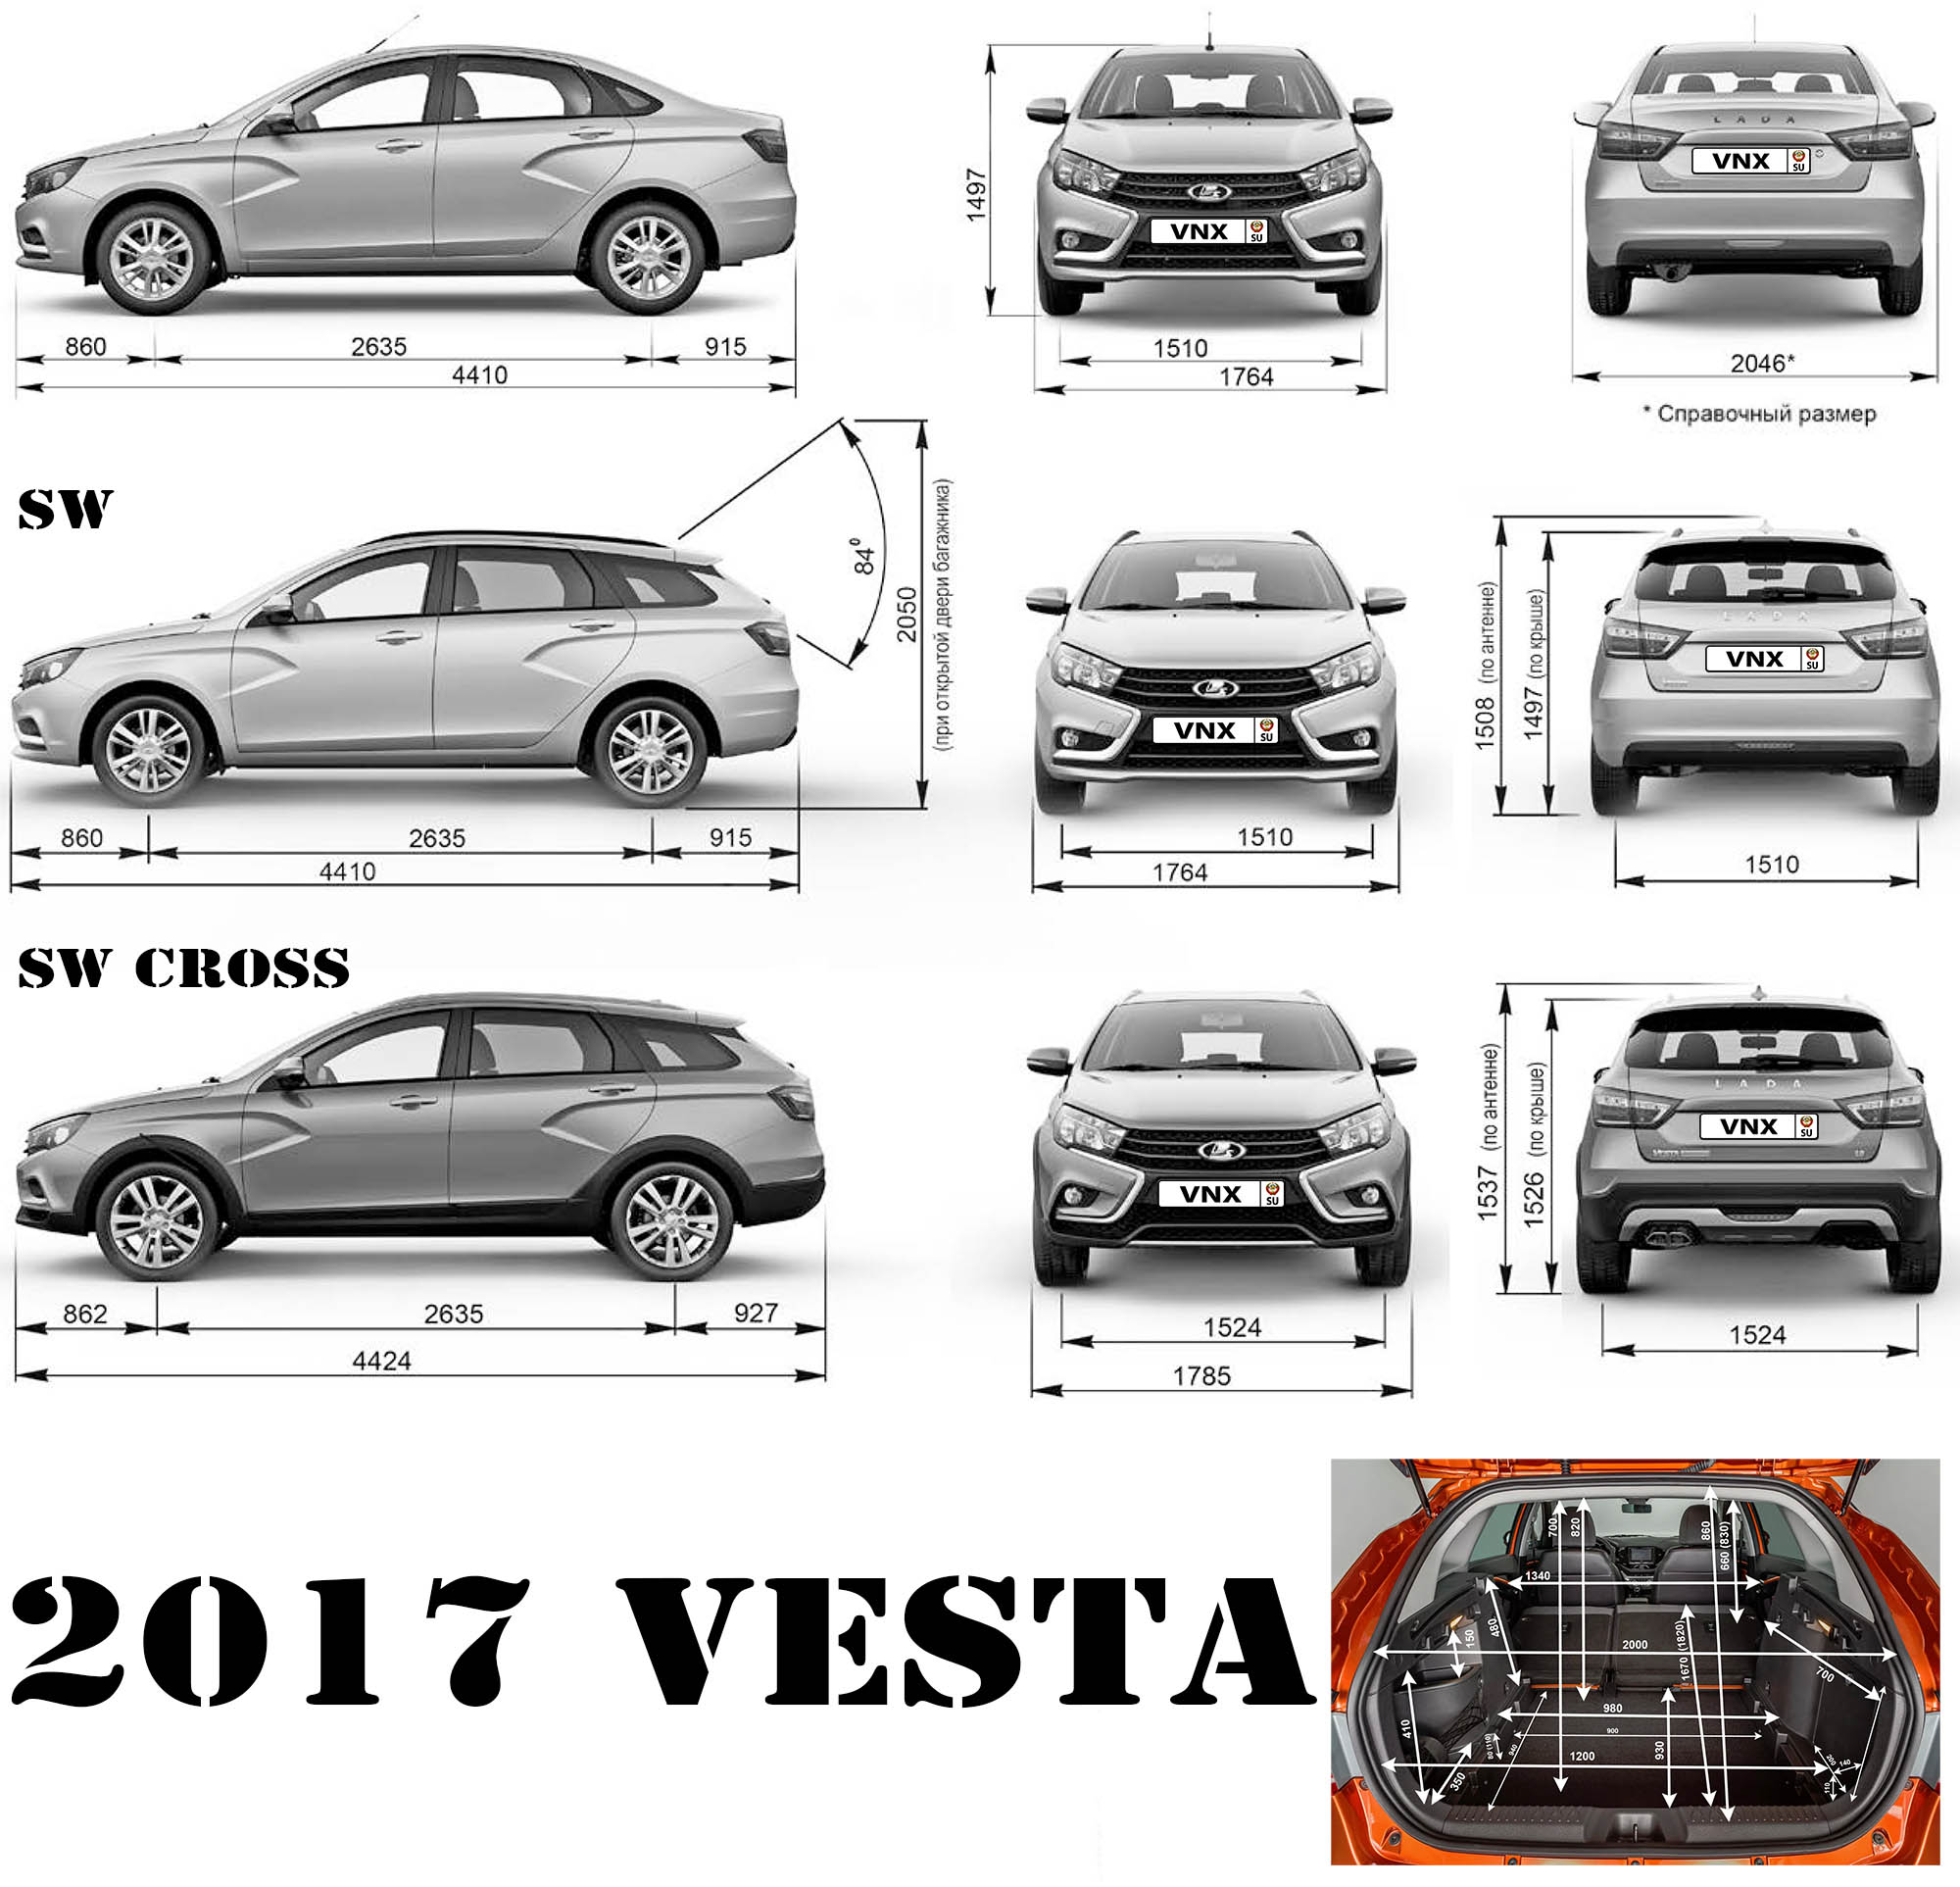 Габаритные размеры Лада Веста СЕ/ СЕ Кросс, Веста СВ/ СВ Кросс (dimensions Lada Vesta SE/SW Cross)